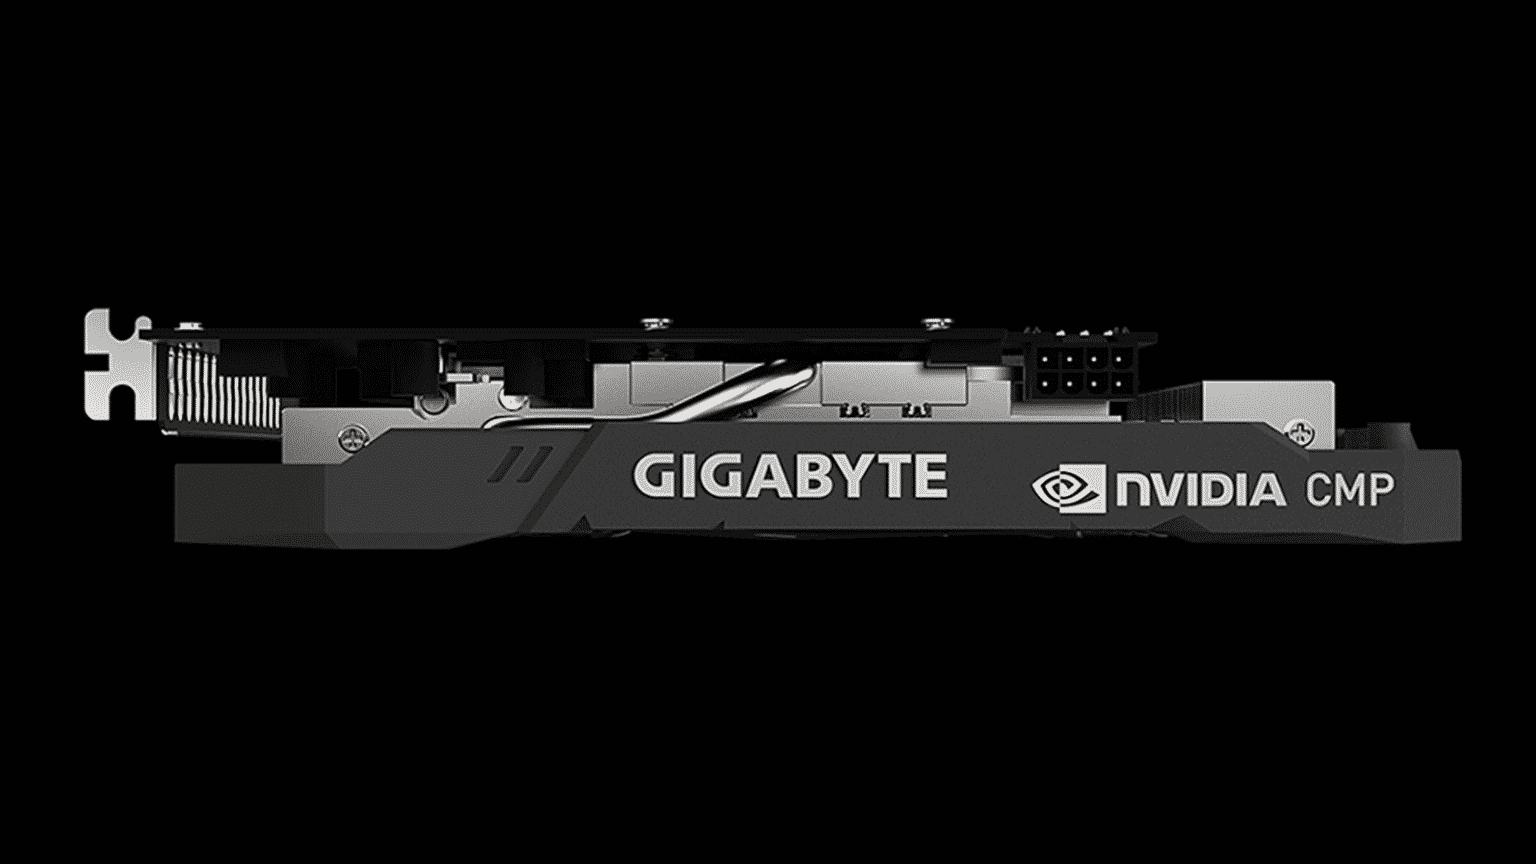 Gigabyte cmp 30hx é anunciada oficialmente: primeira gpu de mineração nvidia | fe7aa038 galeria 2 imagem via gigabyte | gigabyte, nvidia | cmp 30hx notícias, tecnologia